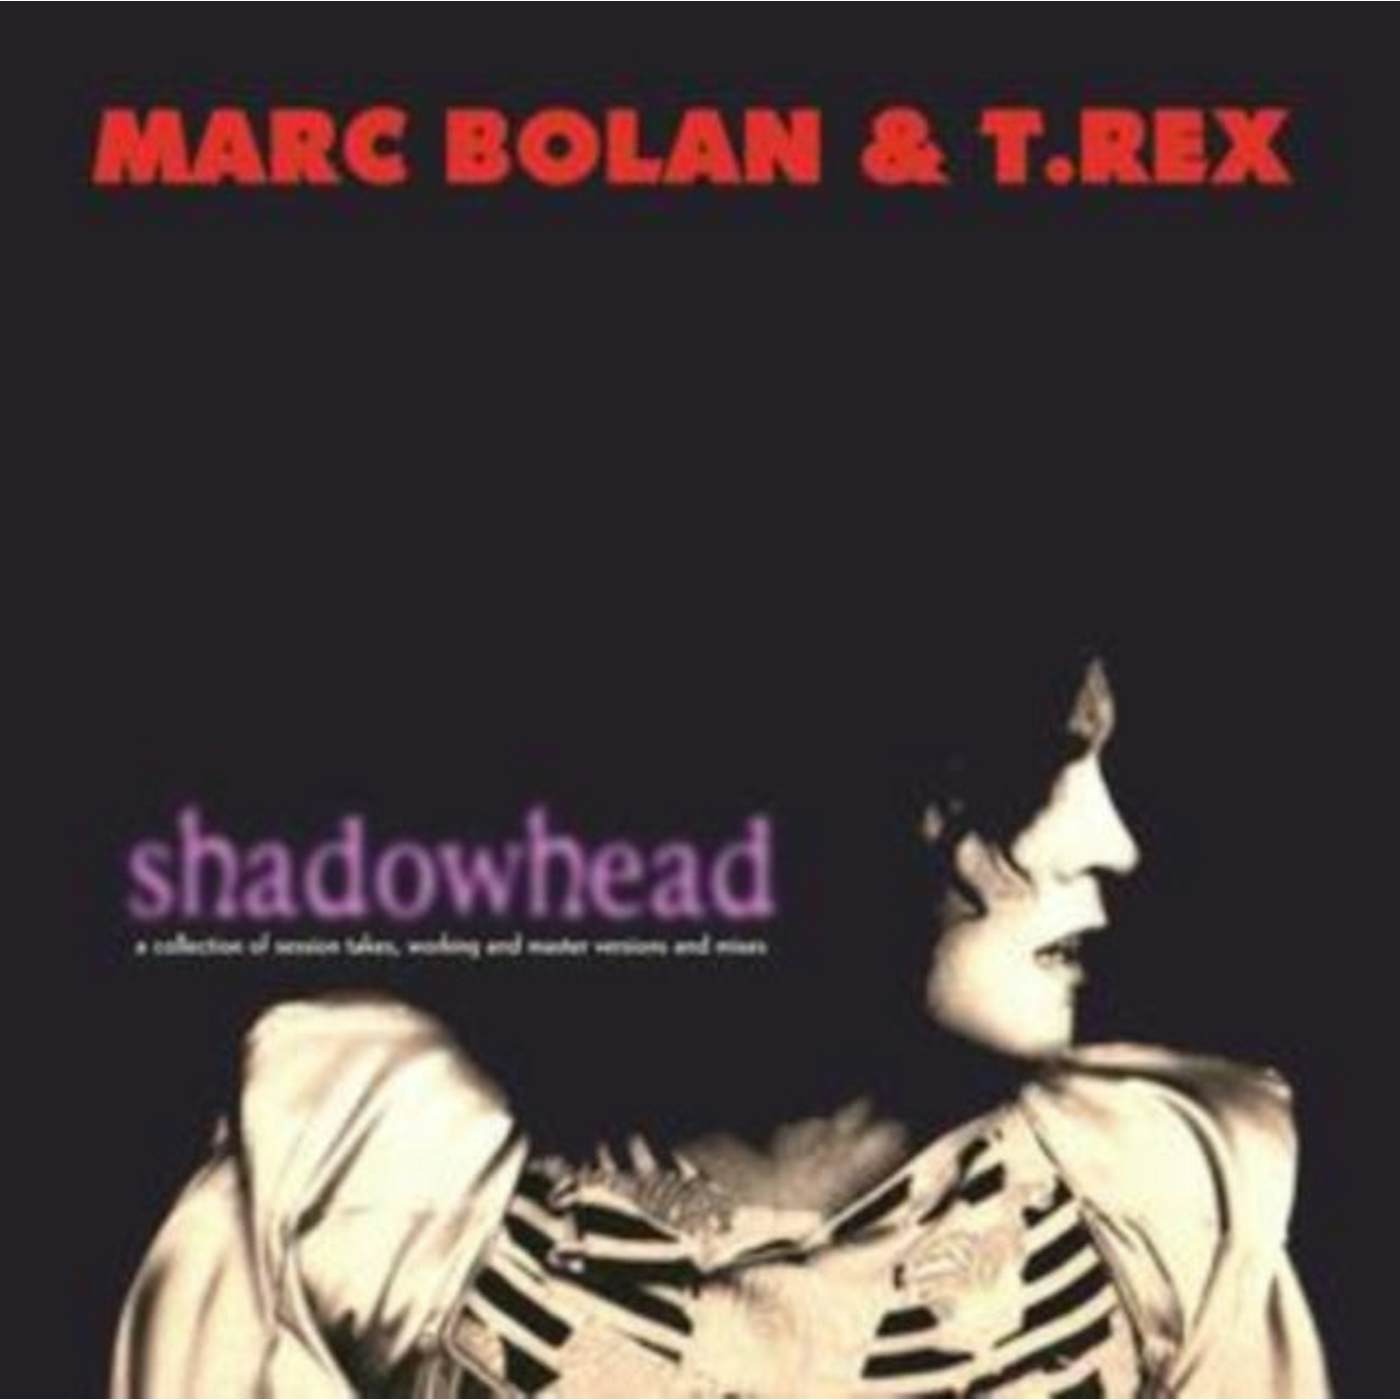 Marc Bolan and T. Rex LP - Shadowhead (Vinyl)